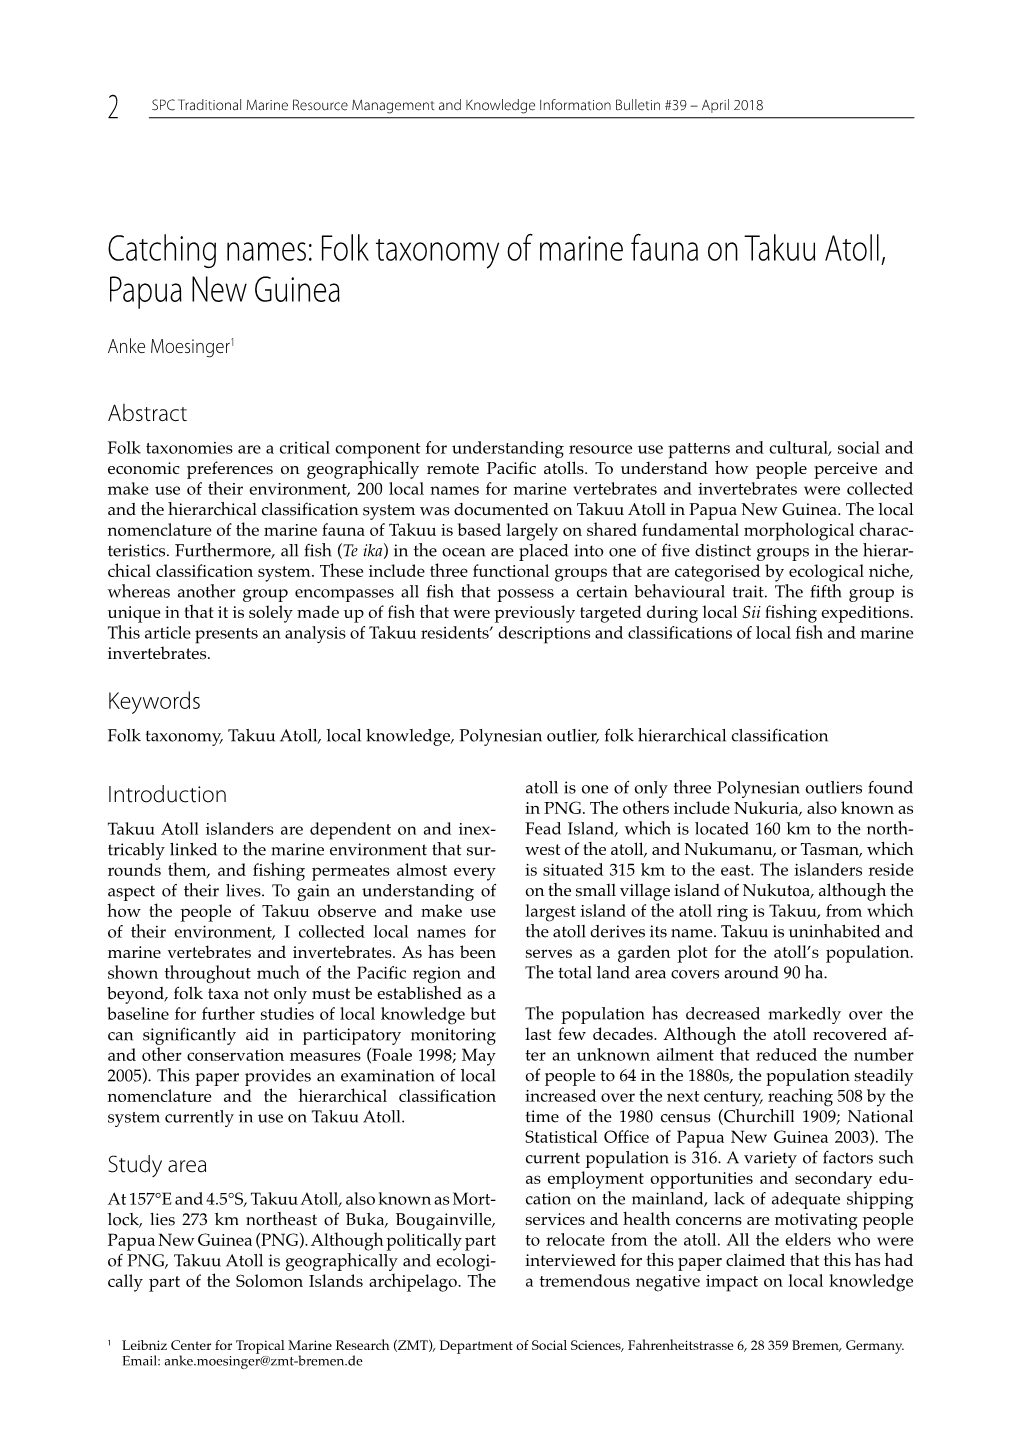 Folk Taxonomy of Marine Fauna on Takuu Atoll, Papua New Guinea